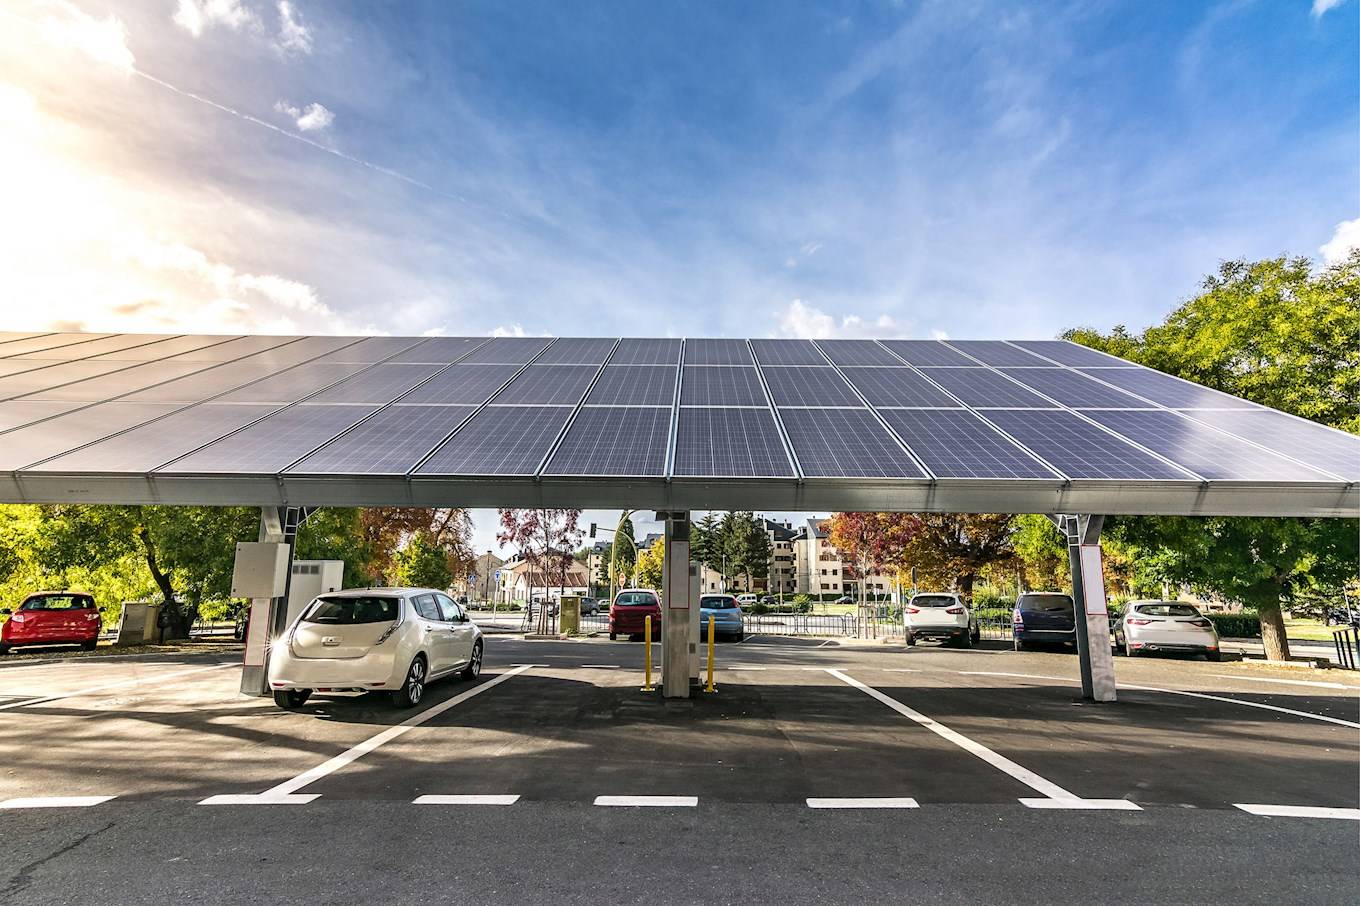 Parkplatz mit Solar-Überdachung